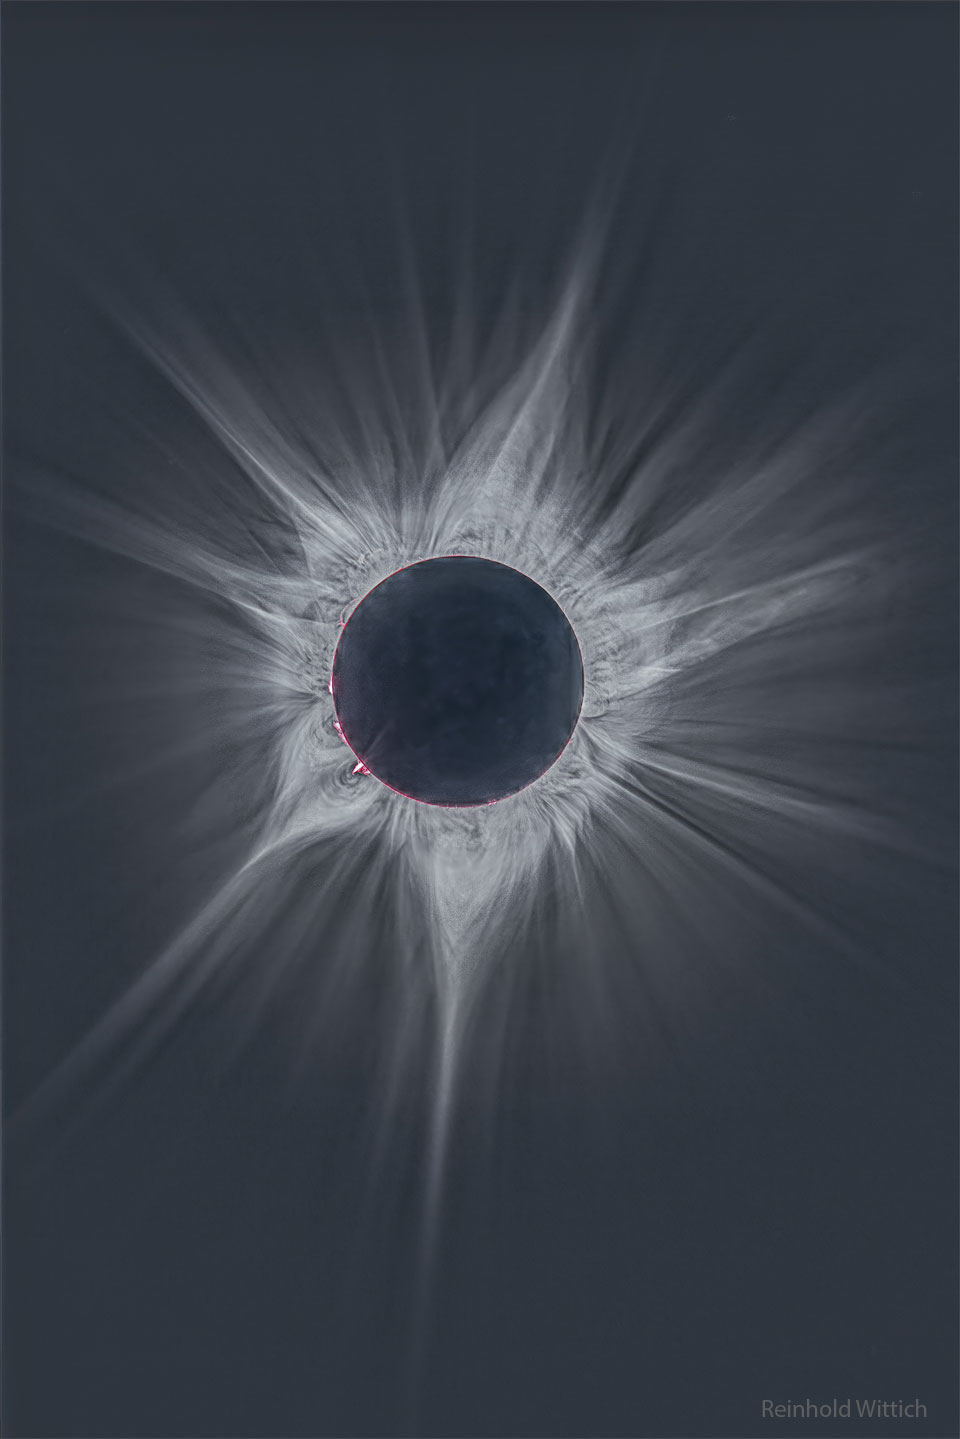 2023年4月日全食期间太阳周围日冕的深层图像。中央圆盘是黑暗的，可以看到许多明亮而复杂的射线向外延伸。在太阳的边缘可以看到一些热粉红色的环状日珥。有关更多详细信息，请参阅说明。